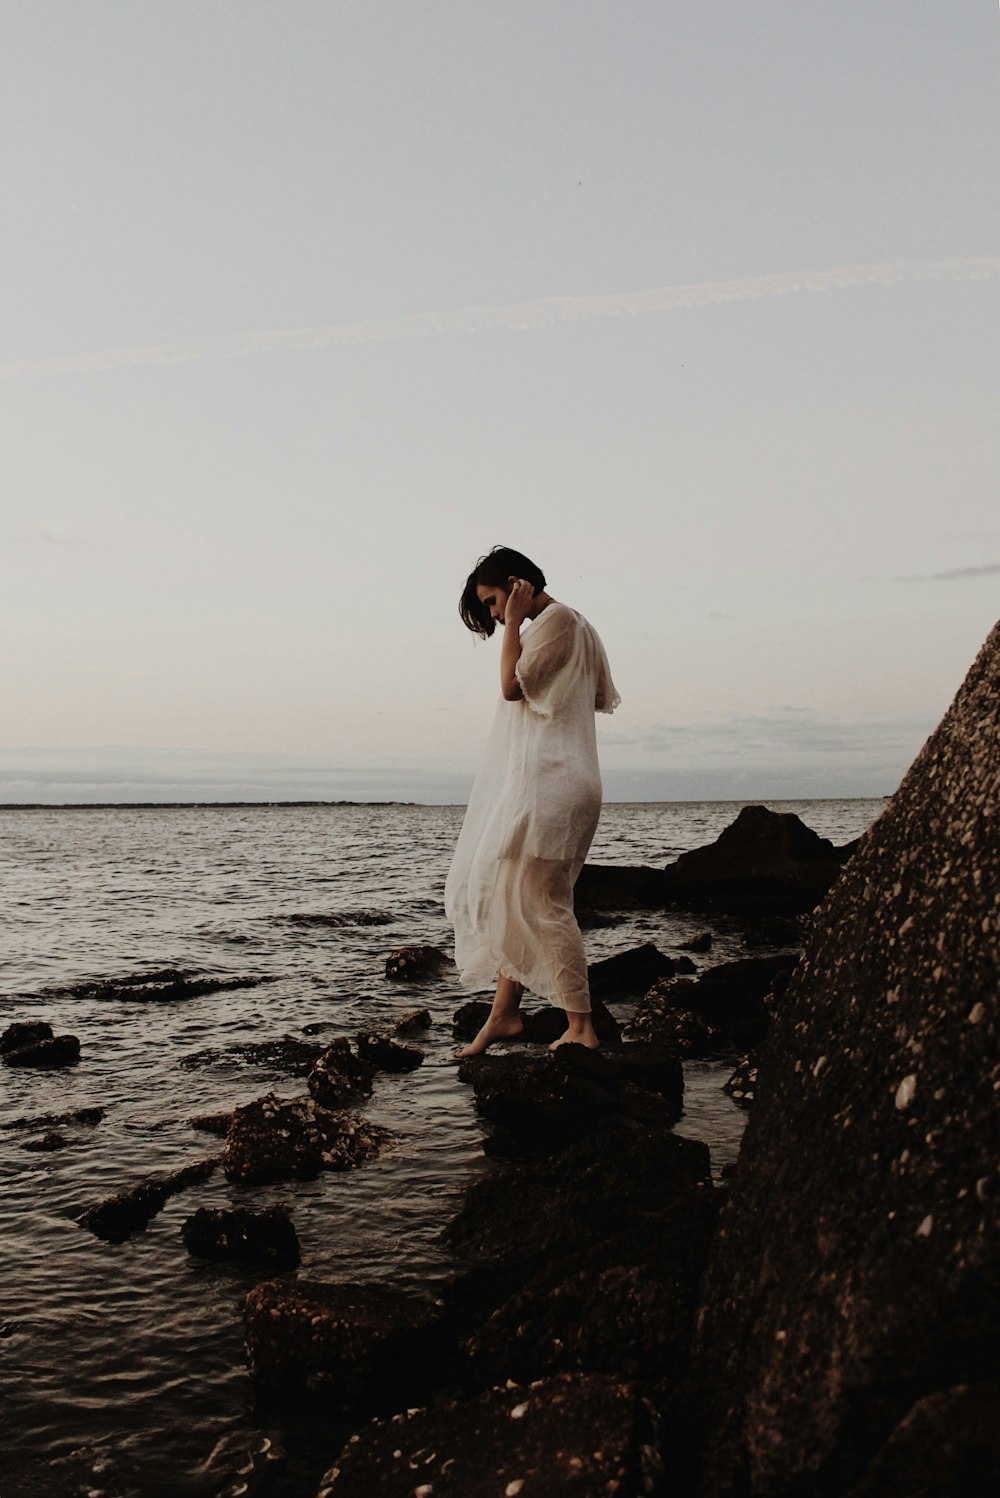 흰 얇은 드레스를 입은 여자가 해변가의 바위 위를 걷고 있습니다